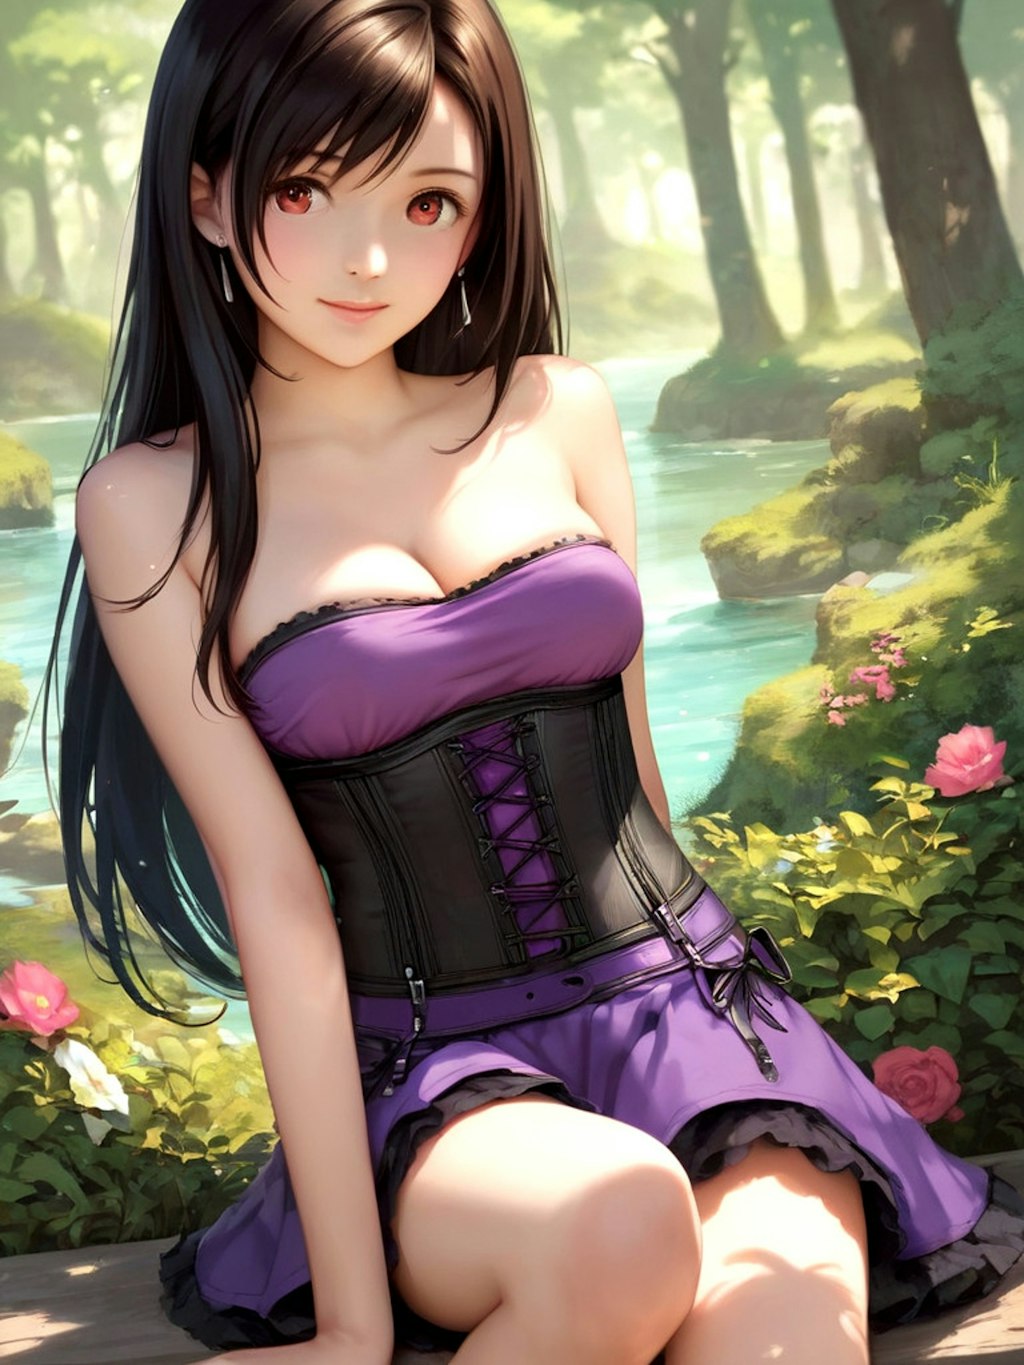 Girl in corset